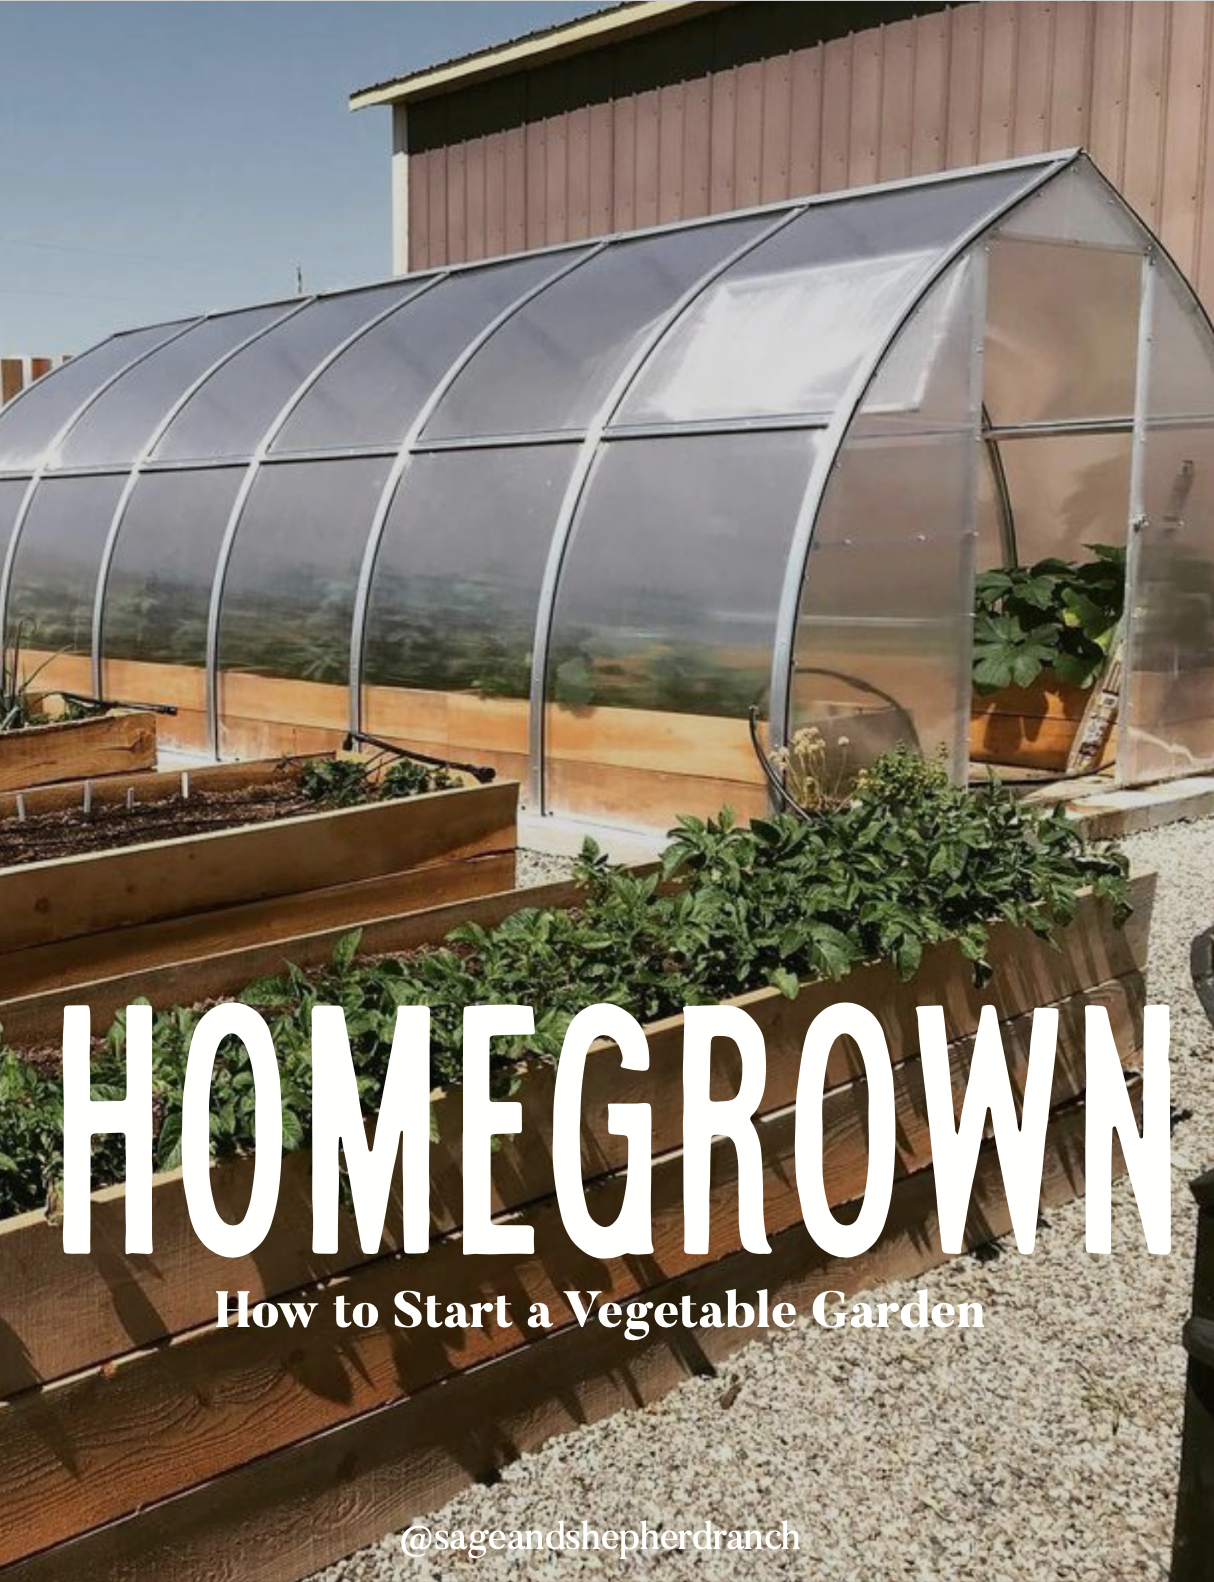 HomeGrown: How to Start a Vegetable Garden eBook + free Garden Planner!